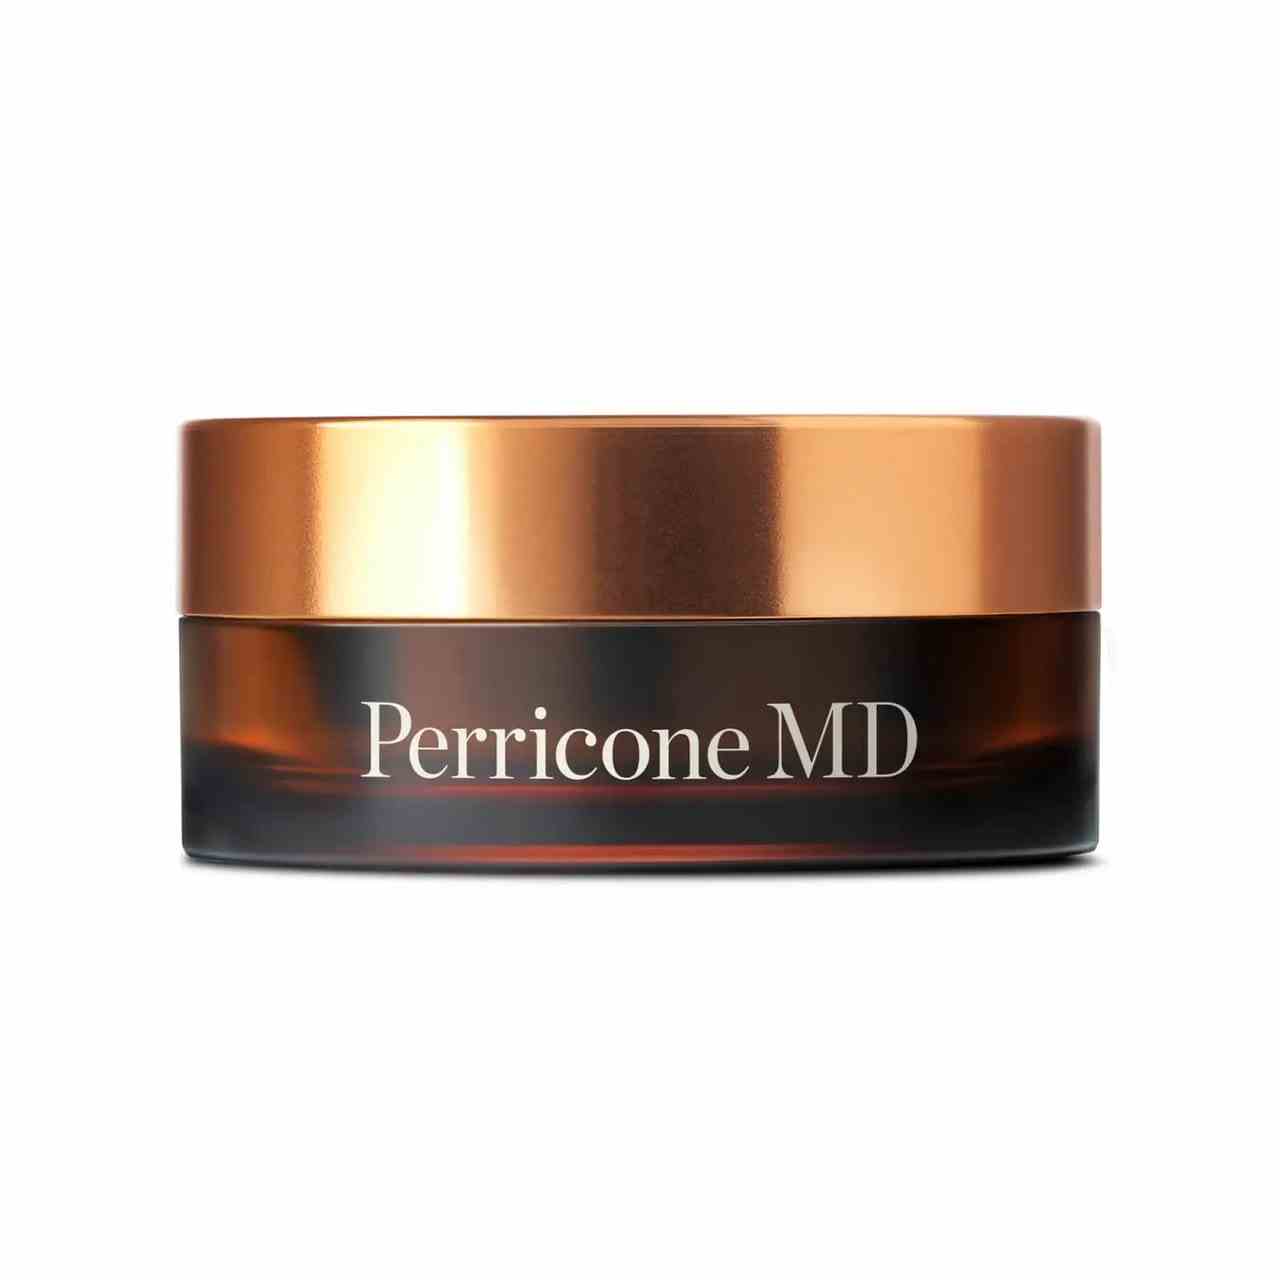 Perricone MD Essential Fx Acyl-Glutathion Chia Cleansing Balm braunes Glas mit bronzefarbenem Deckel auf weißem Hintergrund